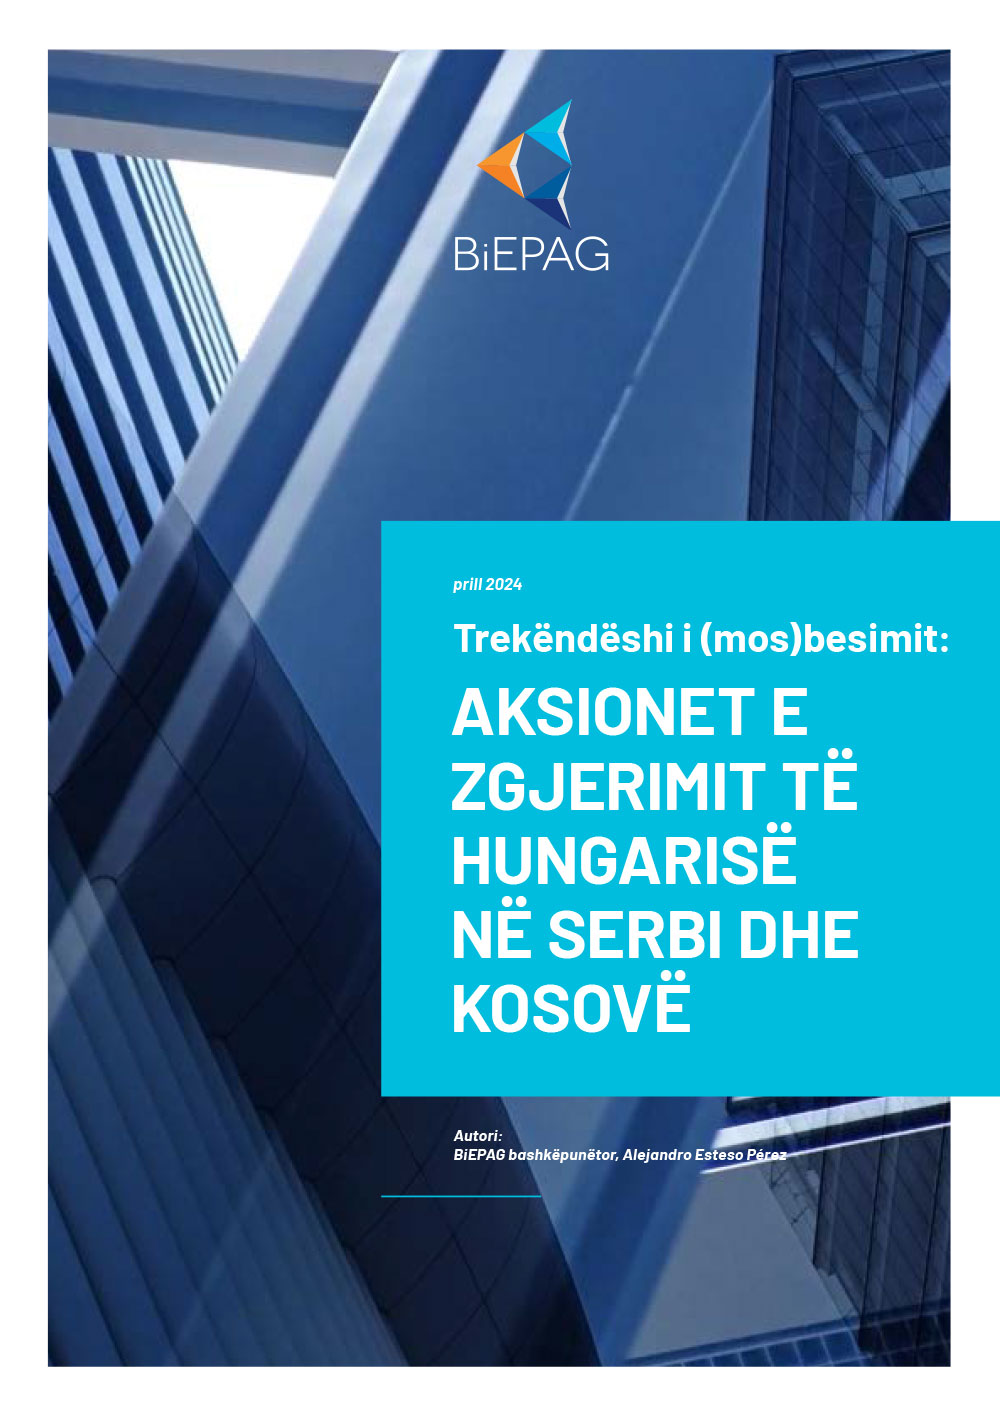 Trekëndëshi i (mos)besimit - Aksionet e zgjerimit të Hungarisë në Serbi dhe Kosovë